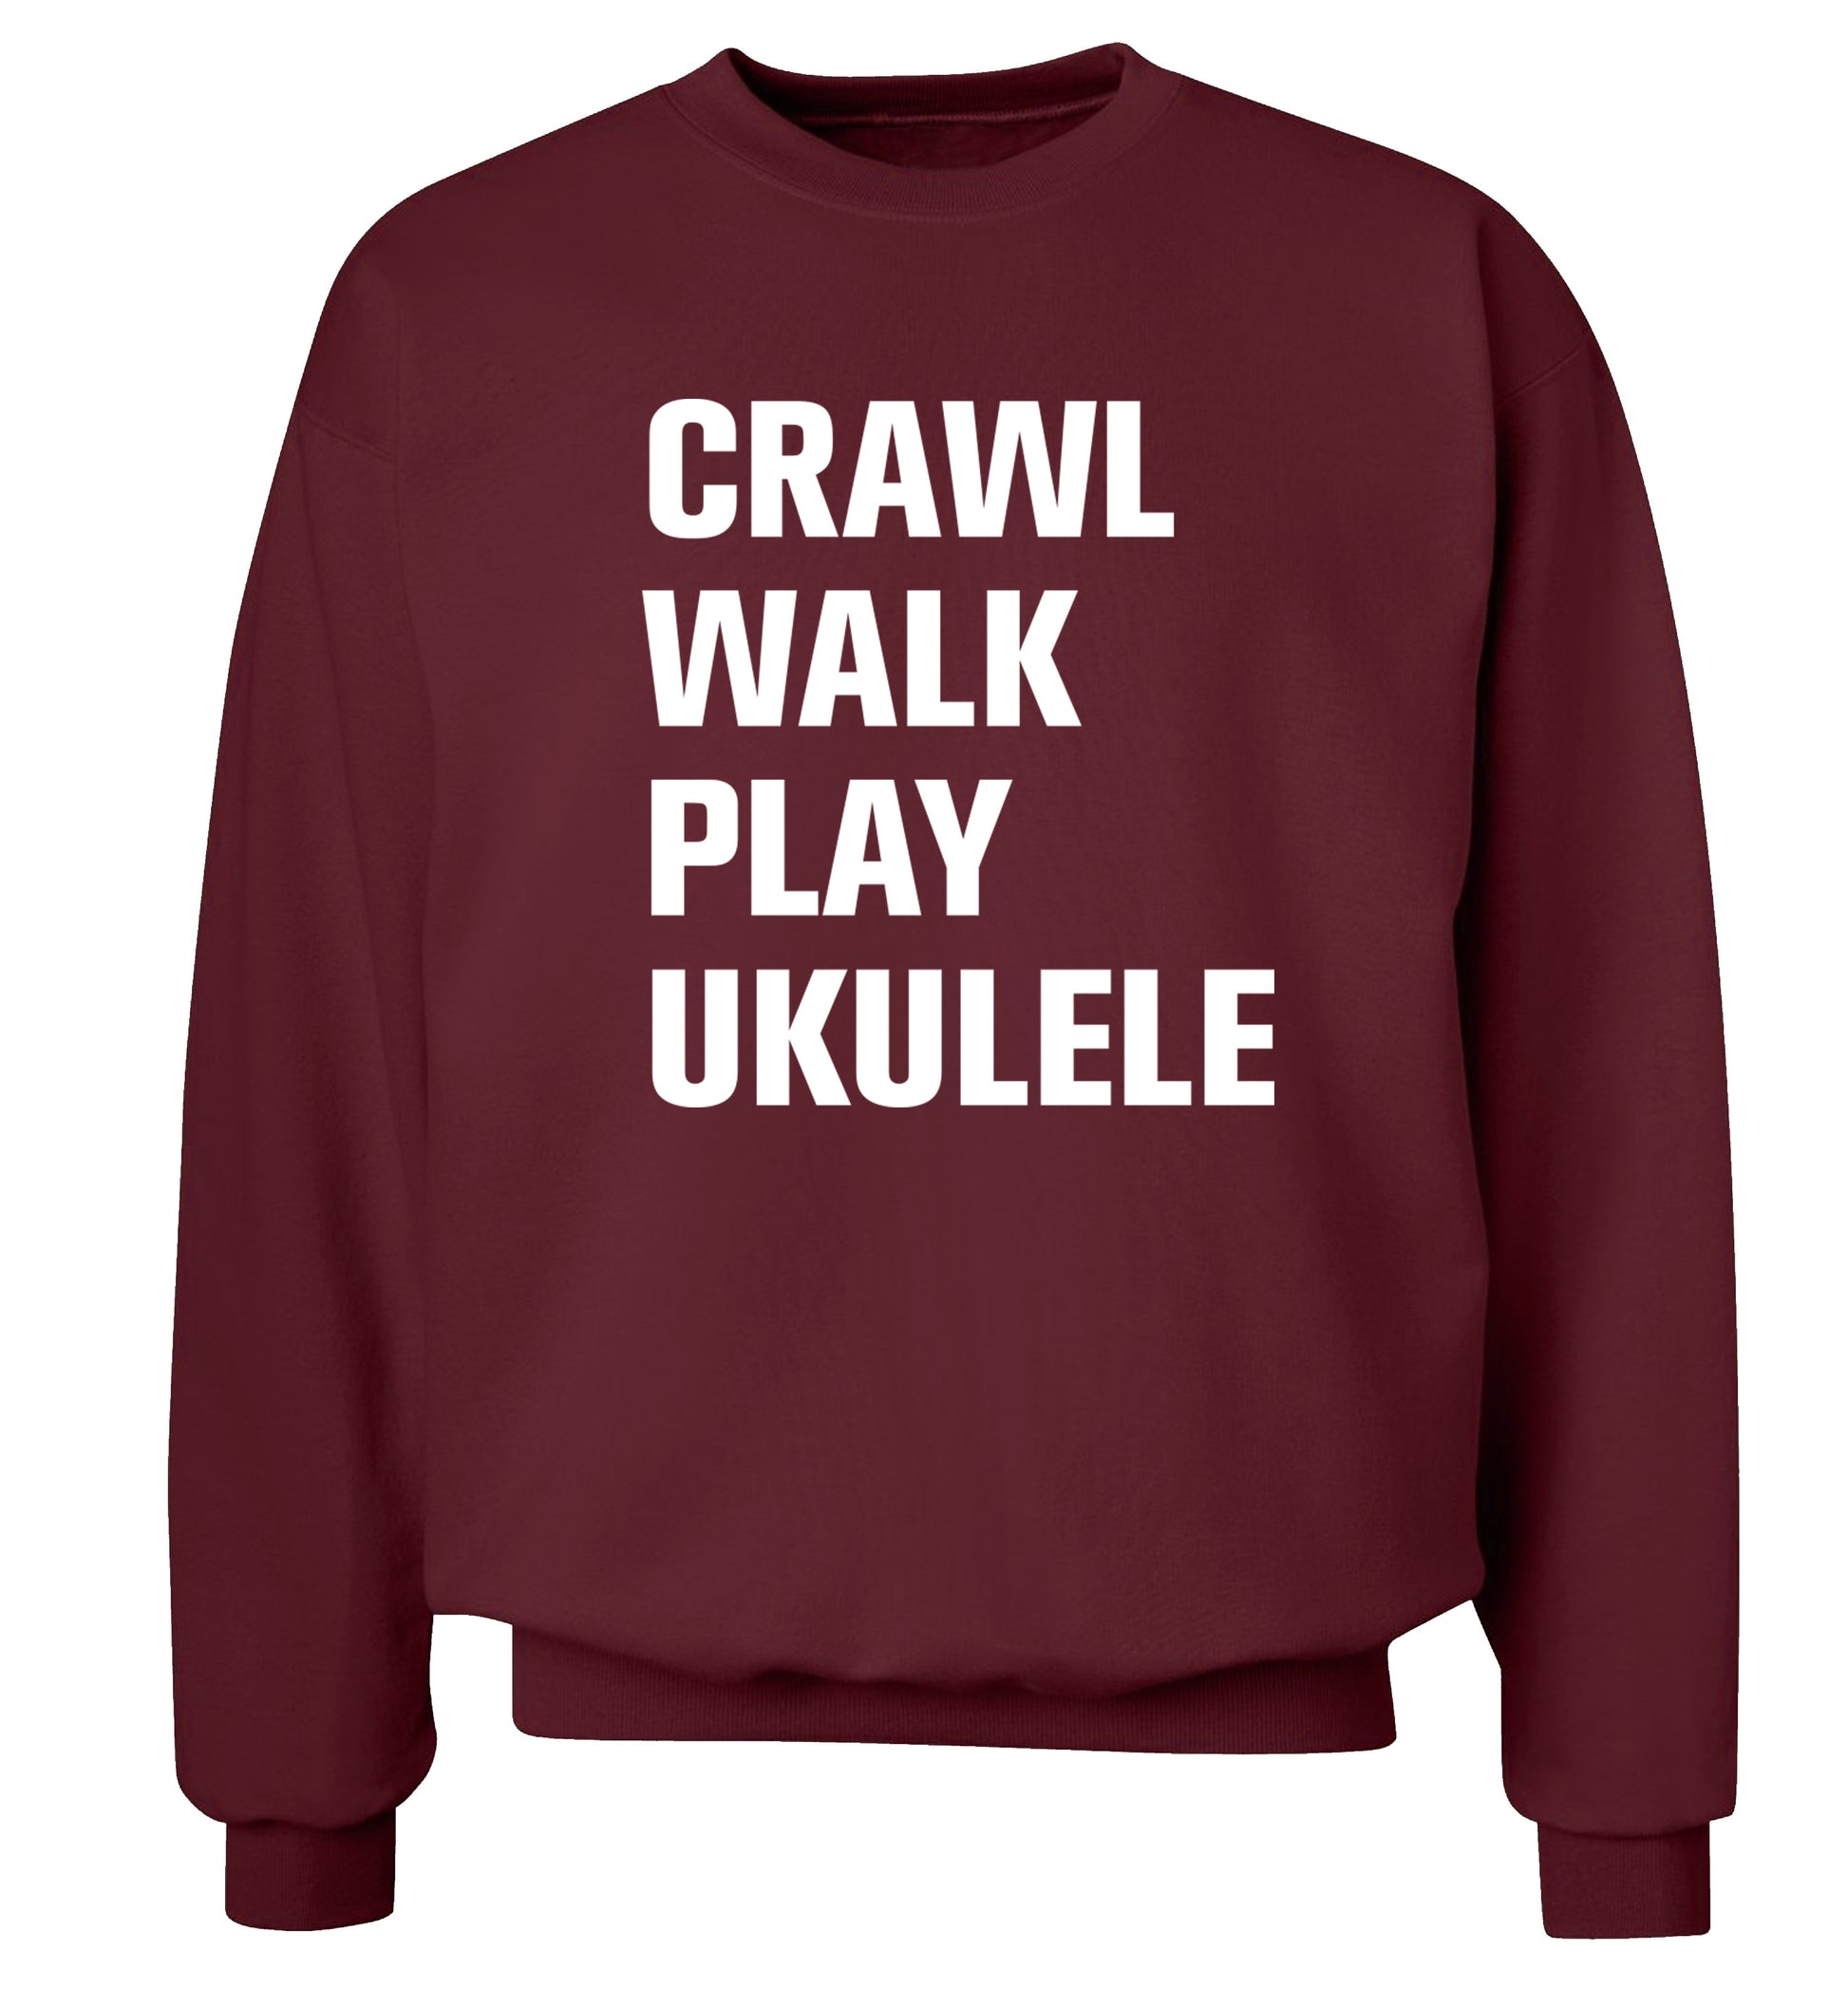 Crawl walk play ukulele Adult's unisex maroon Sweater 2XL